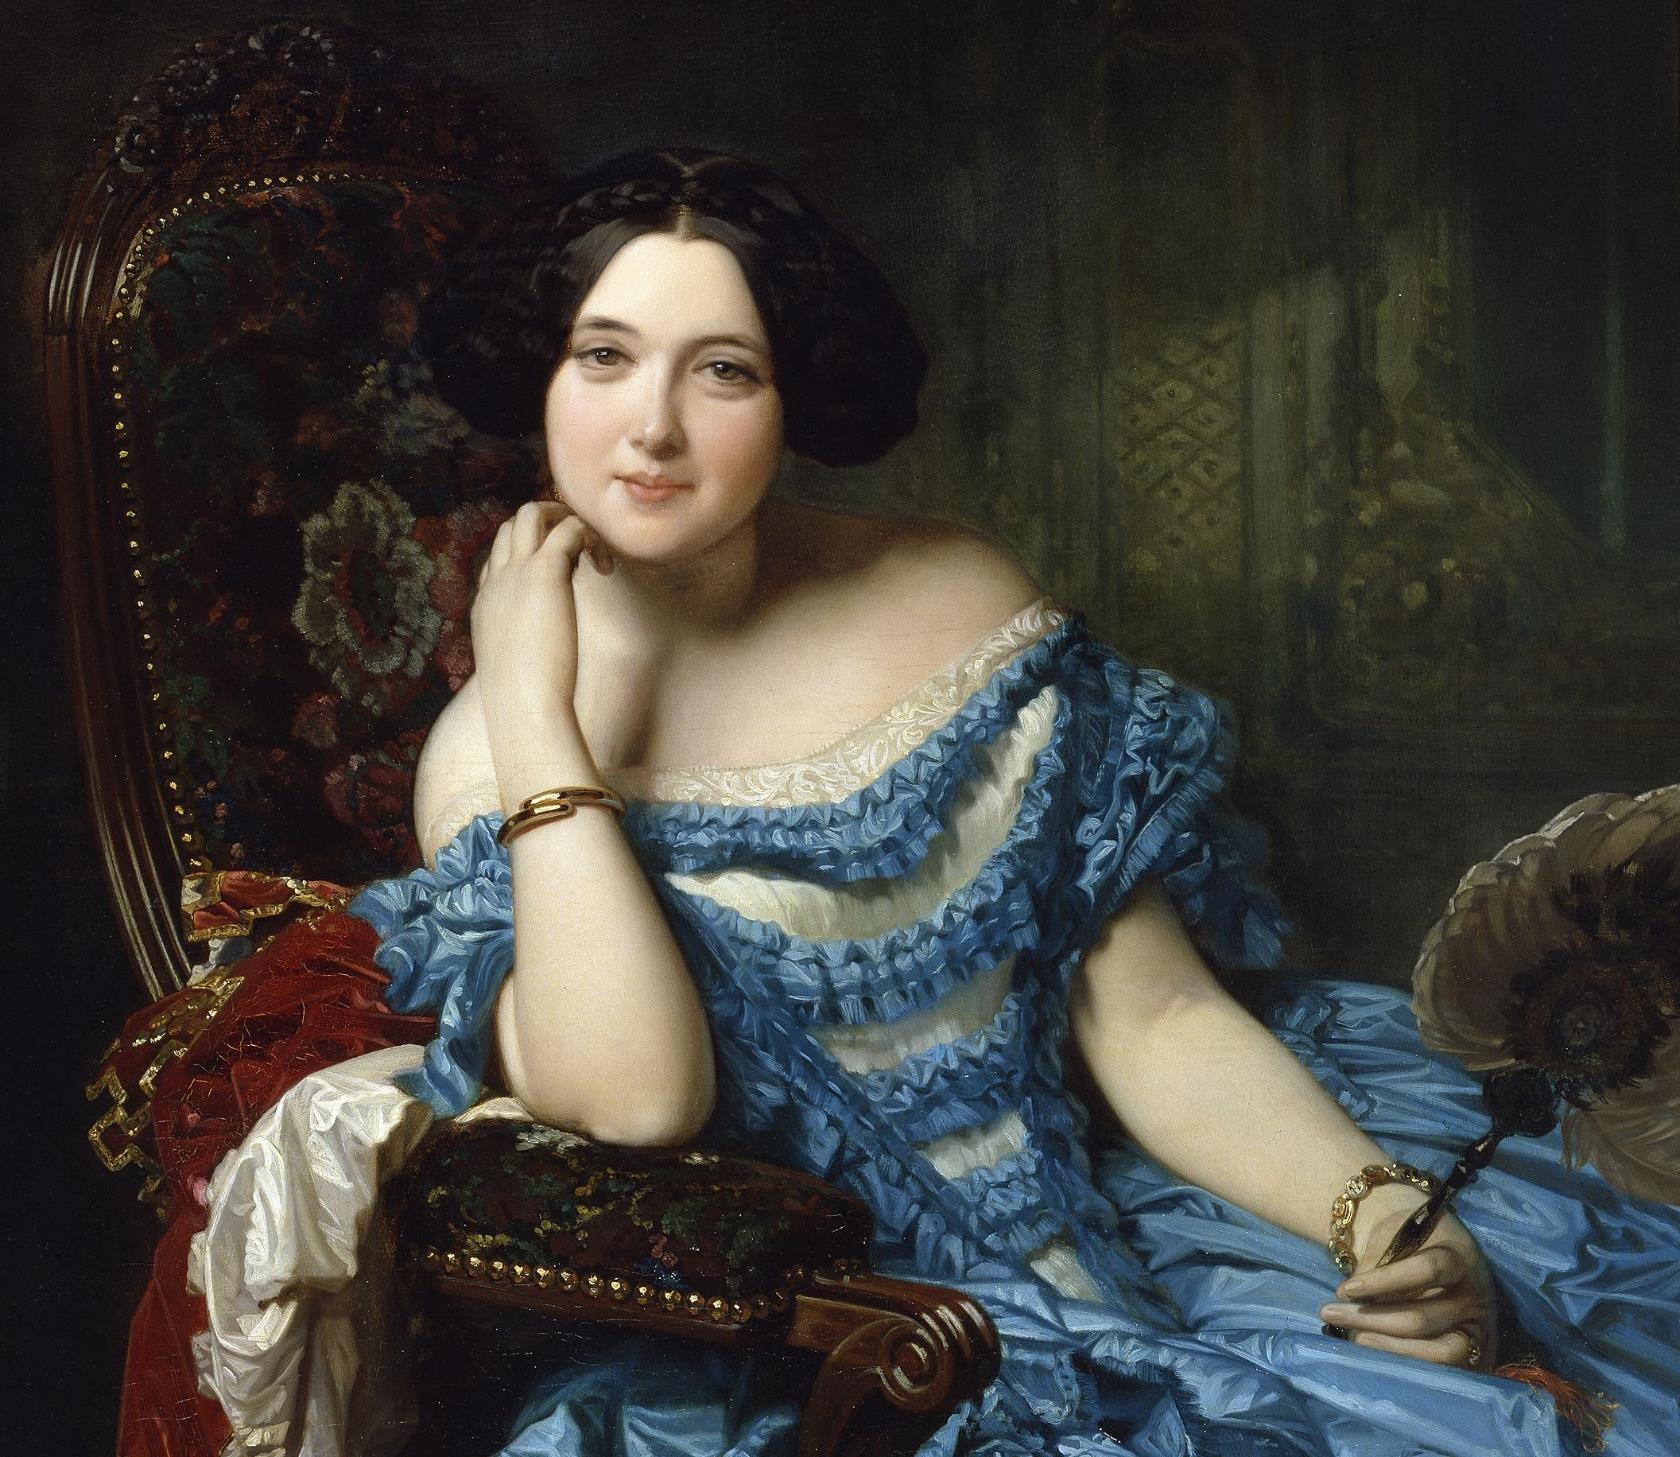 Амалия де Льяно и Дотрес, графиня Вильчес. Художник Federico de Madrazo y Kuntz (1815-1894).